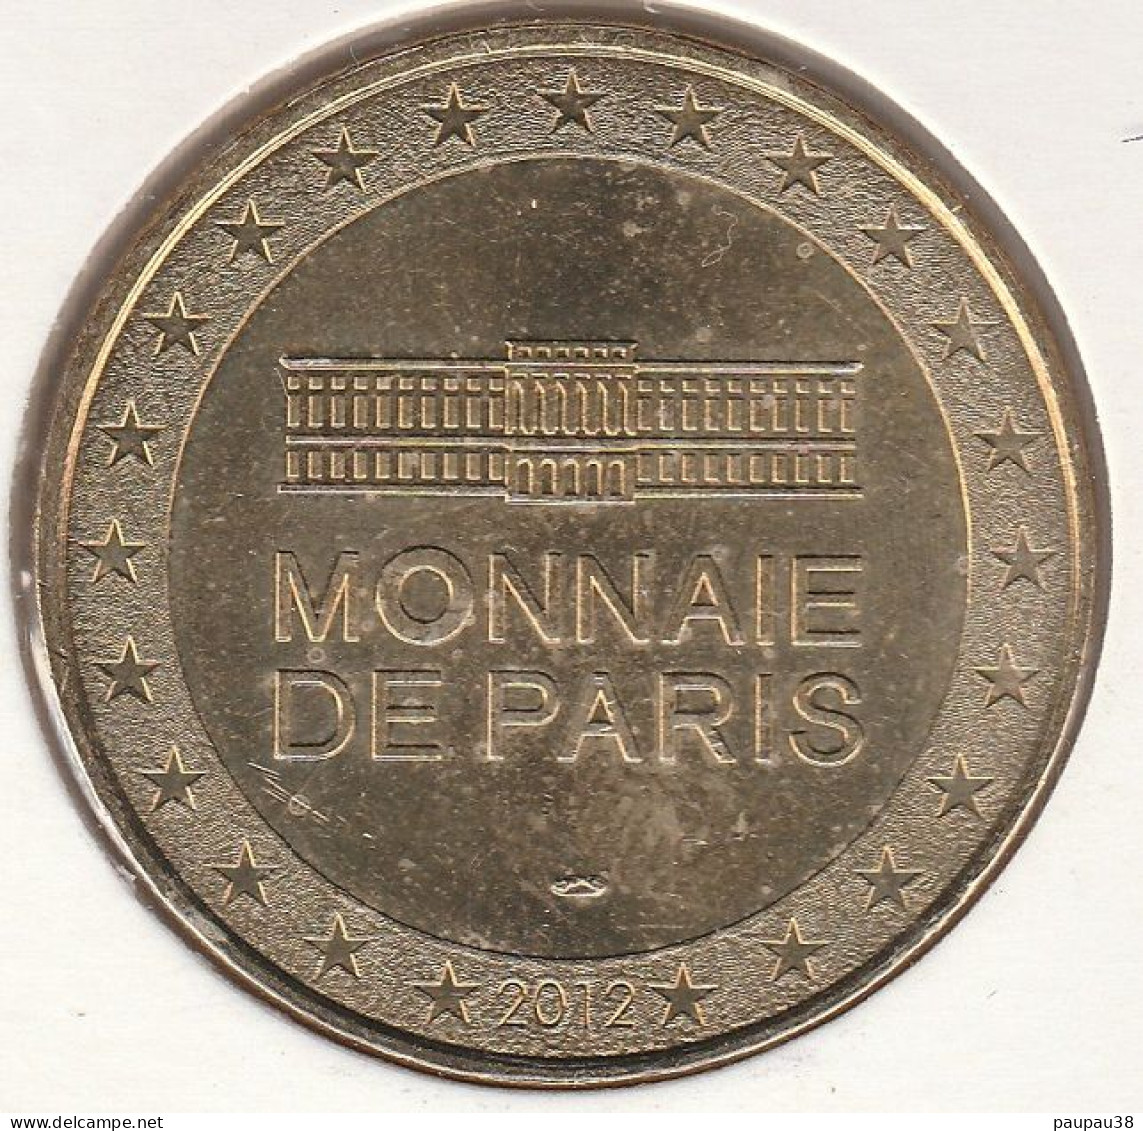 MONNAIE DE PARIS 2012 - 75 PARIS Centre Pompidou - 2012